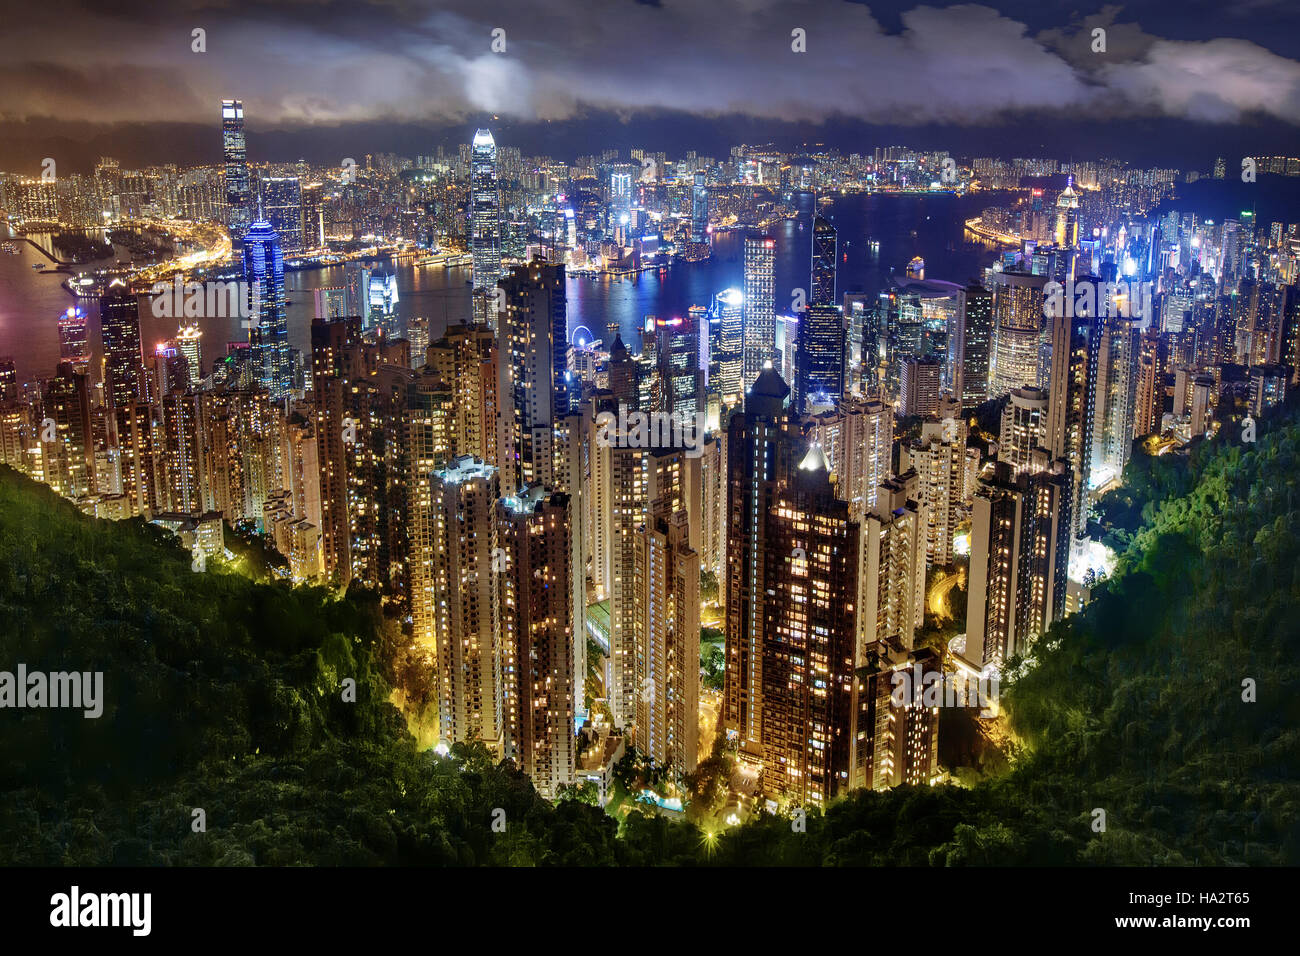 Des gratte-ciel, le port de Victoria, et de l'île de Hong Kong Kowloon, Hong Kong, Chine Banque D'Images